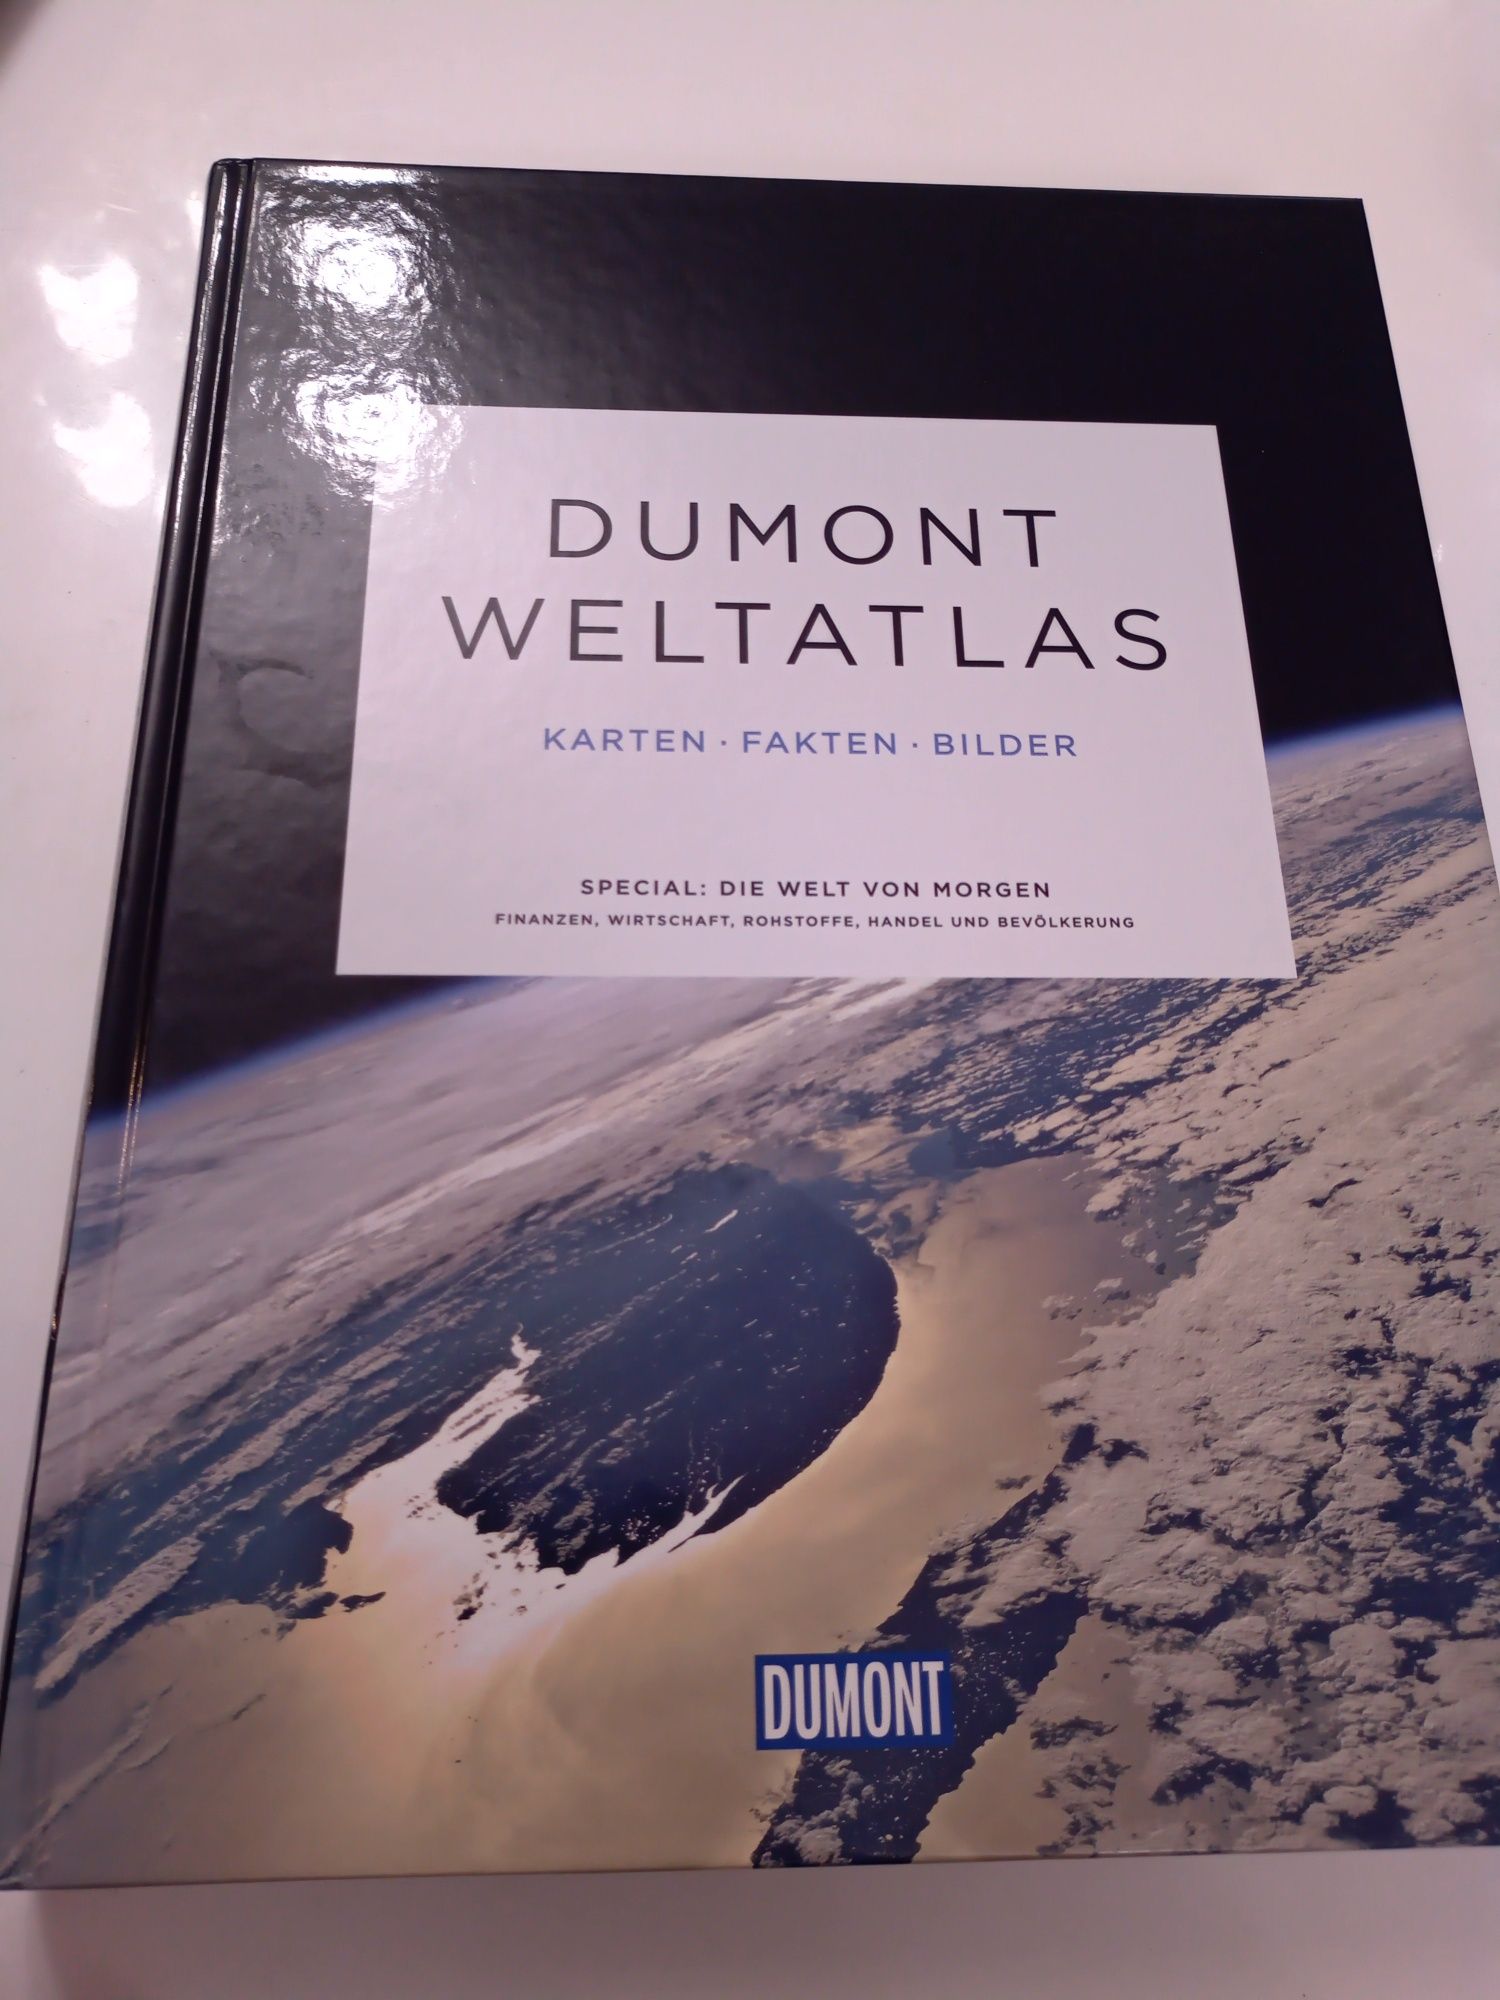 DuMont Weltatlas: Karten - Fakten - Bilder niemiecki atlas świata